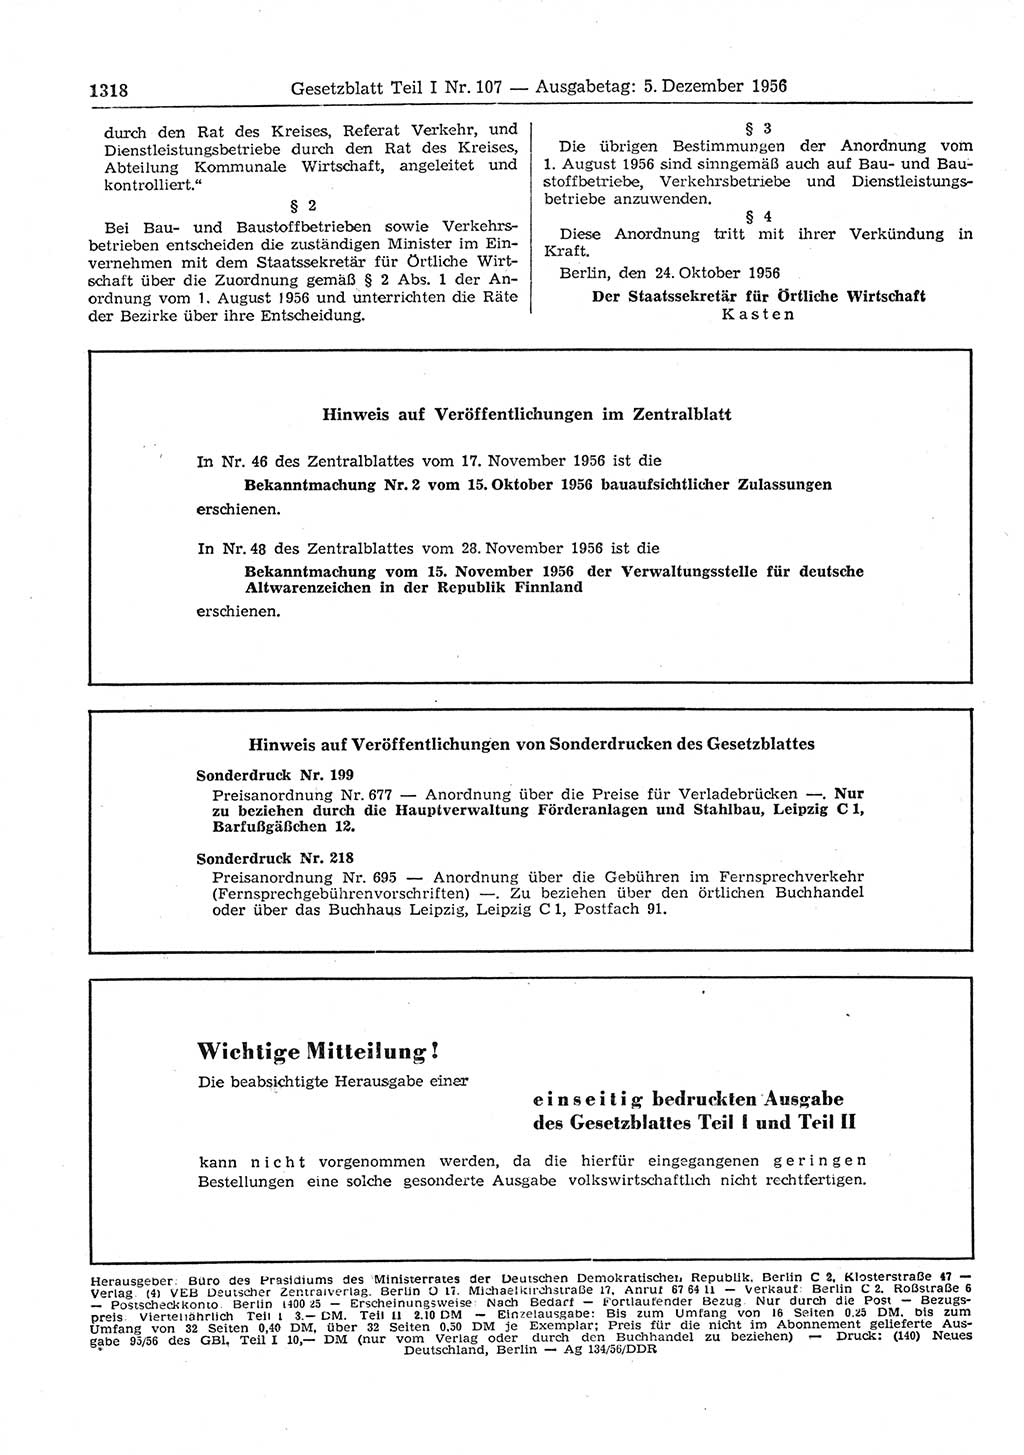 Gesetzblatt (GBl.) der Deutschen Demokratischen Republik (DDR) Teil Ⅰ 1956, Seite 1318 (GBl. DDR Ⅰ 1956, S. 1318)